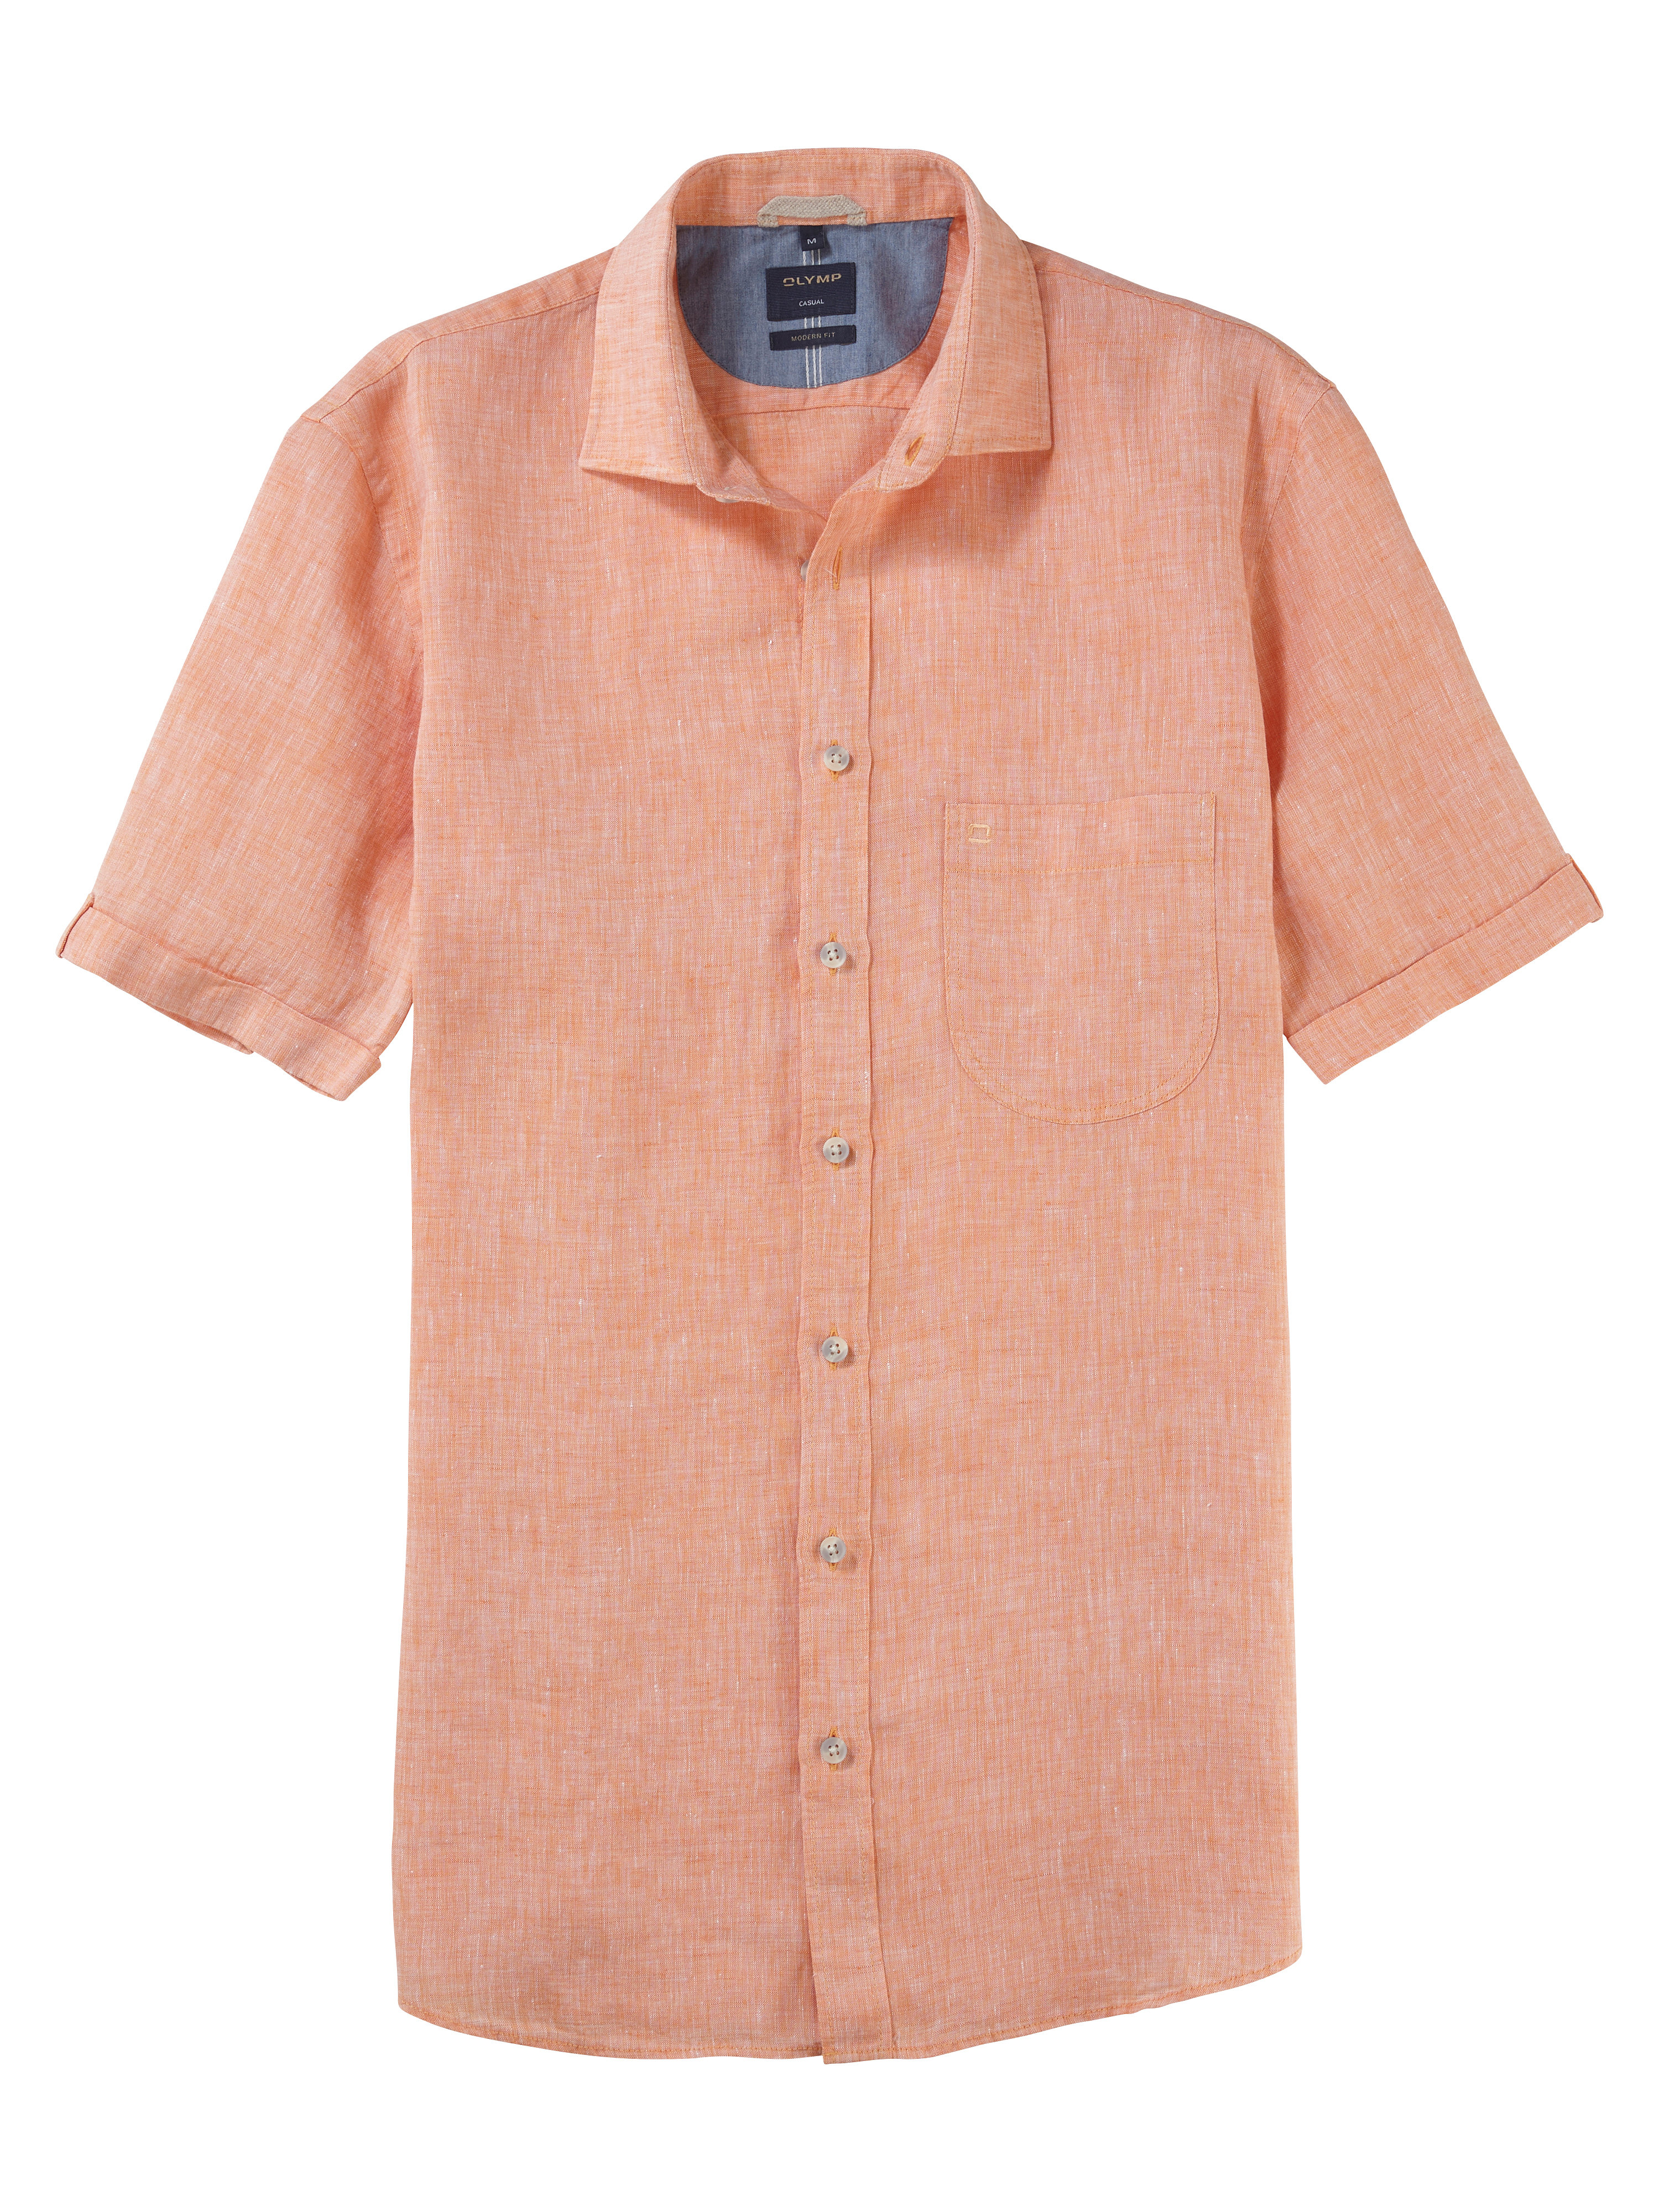 OLYMP Modern Fit pánská lněná košile s krátkým rukávem 4026 82 32 Oranžová XL